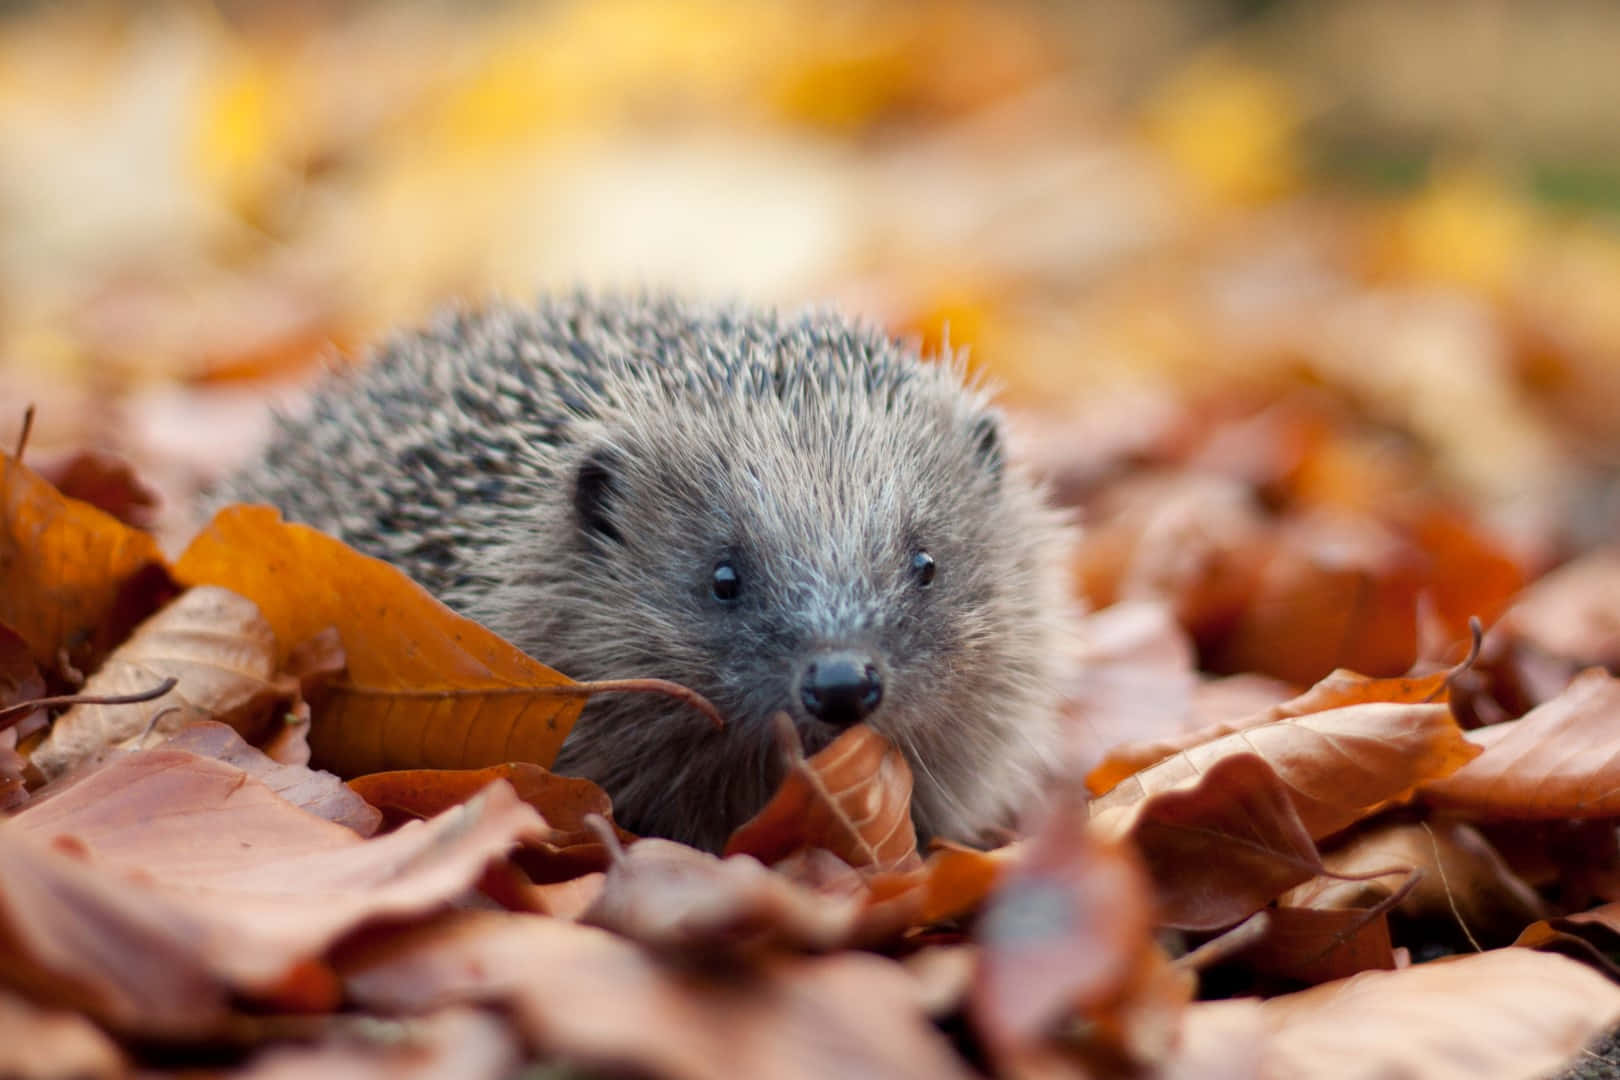 Hedgehog-billeder 1620 X 1080